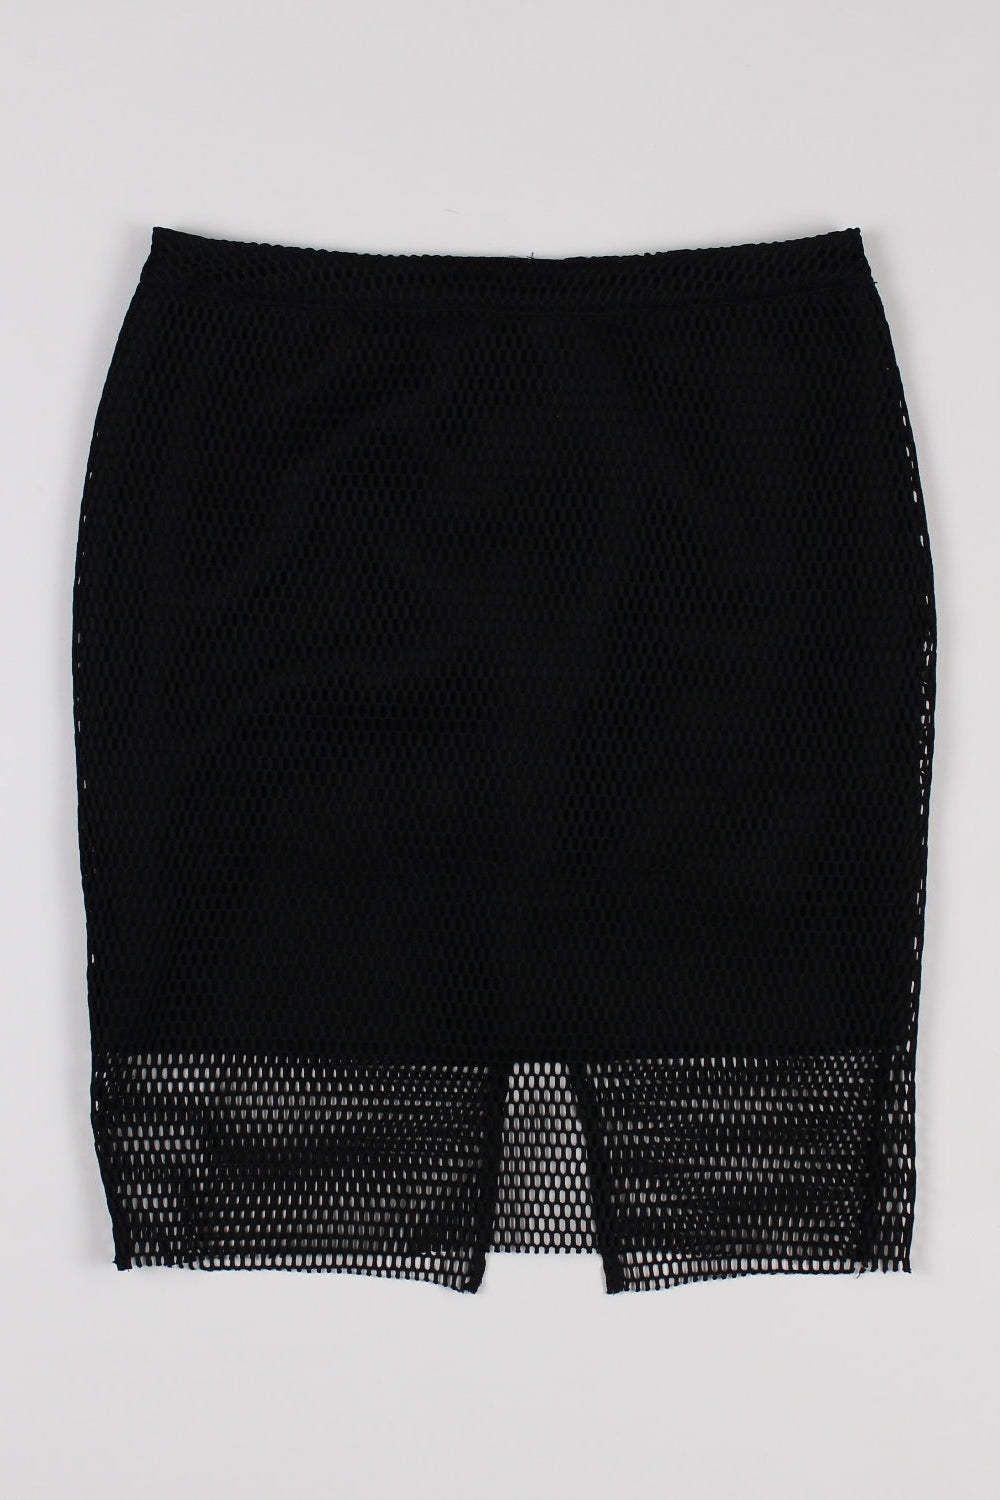 H&amp;M Black Mesh Skirt 10